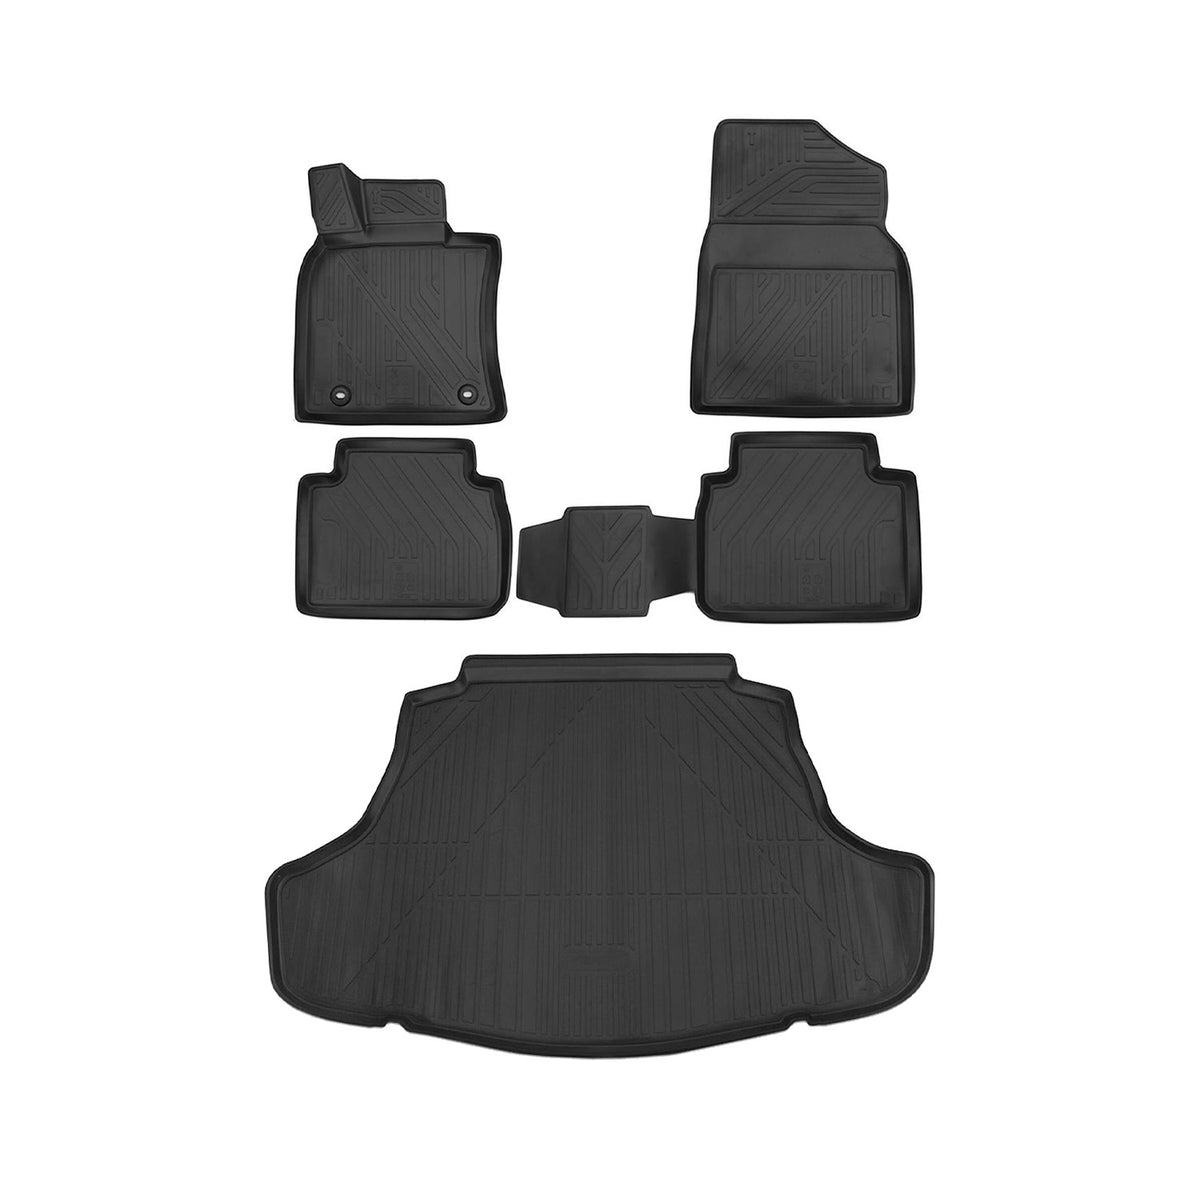 Fußmatten & Kofferraumwanne Set für Toyota Camry 2018-2020 Gummi TPE Schwarz 5x